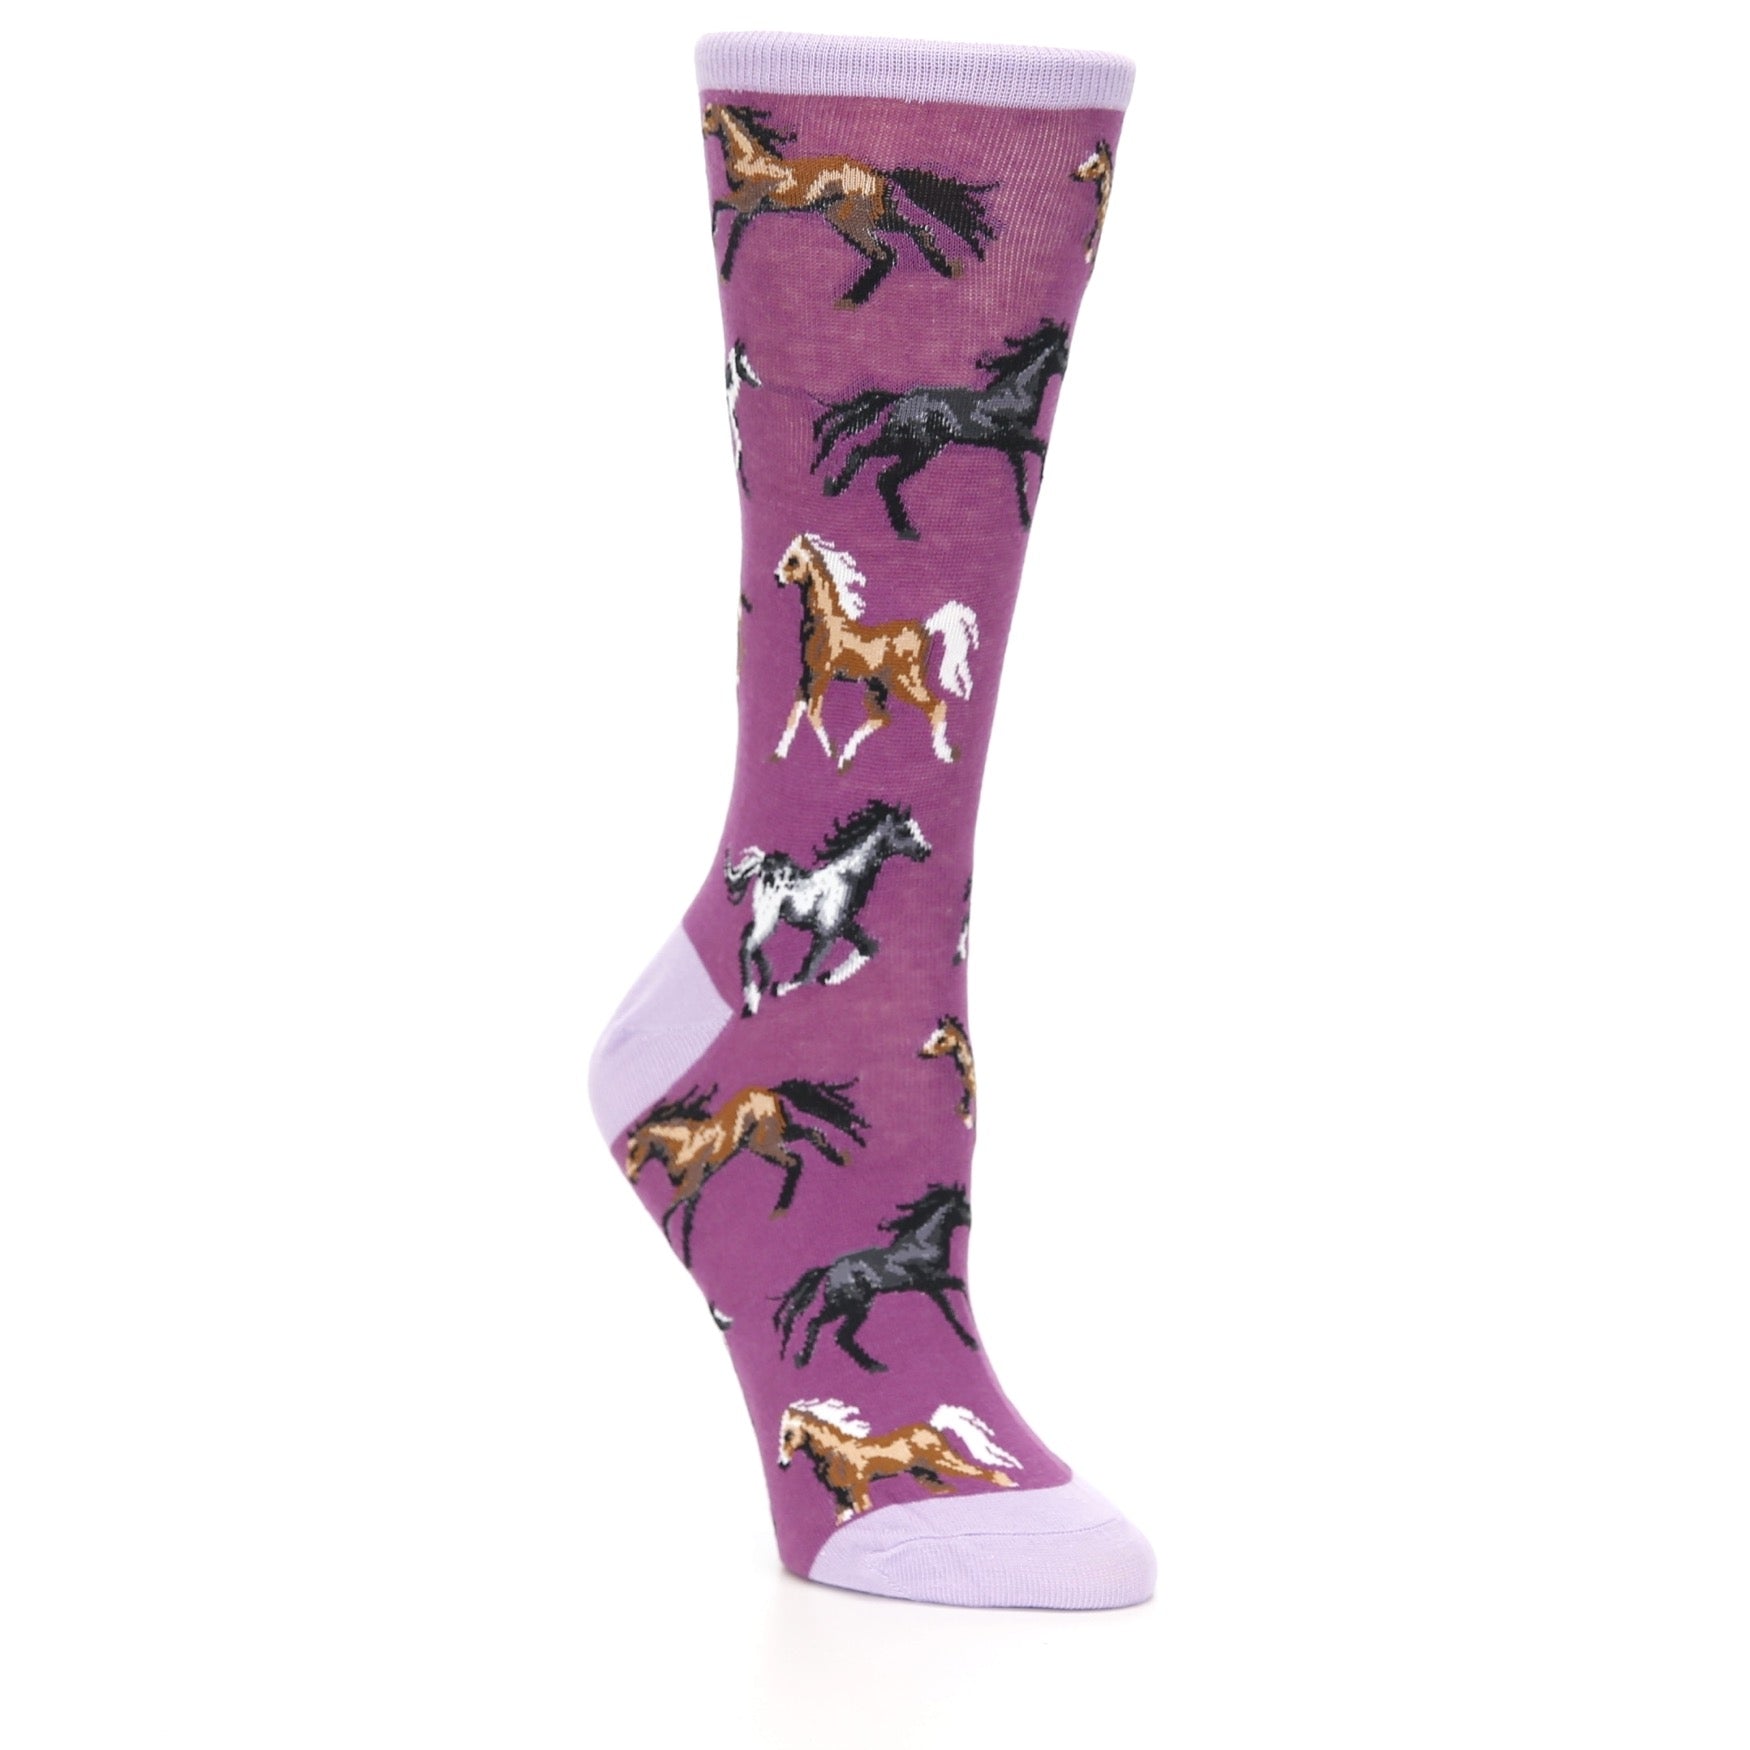 Joy Horseback Ride Socks - Women's Novelty Socks